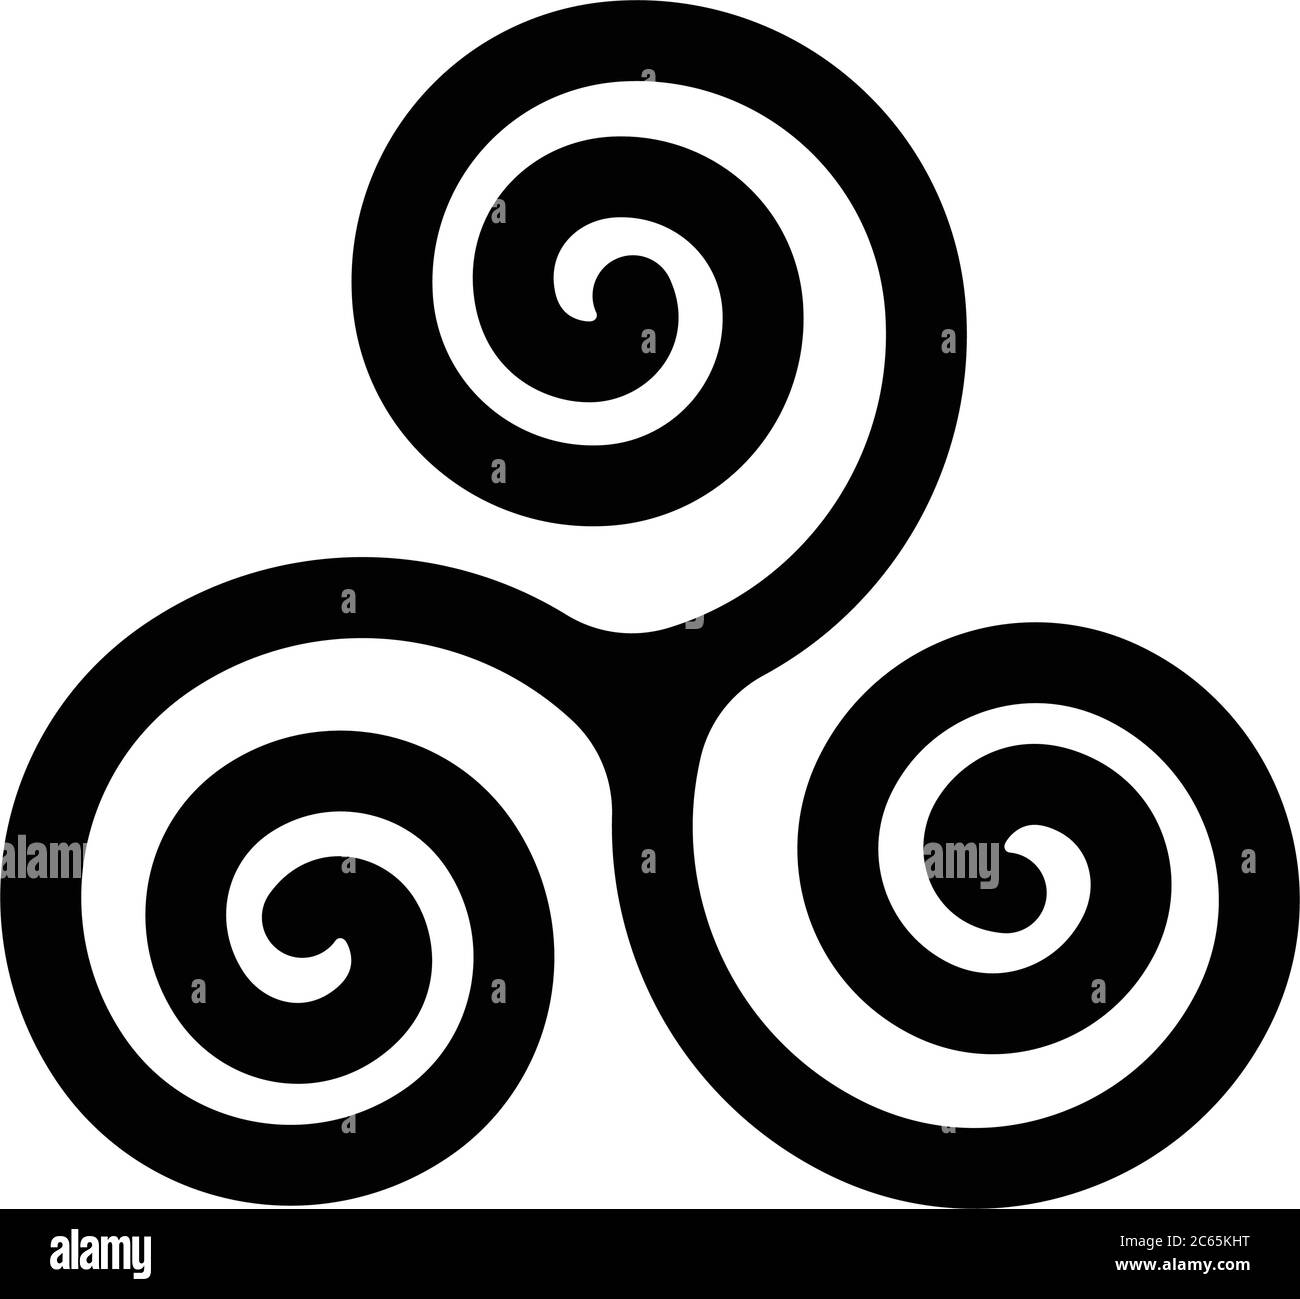 Symbole Triskelion ou triskele. Triple spirale - panneau celtique. Illustration simple à vecteur noir plat. Illustration de Vecteur